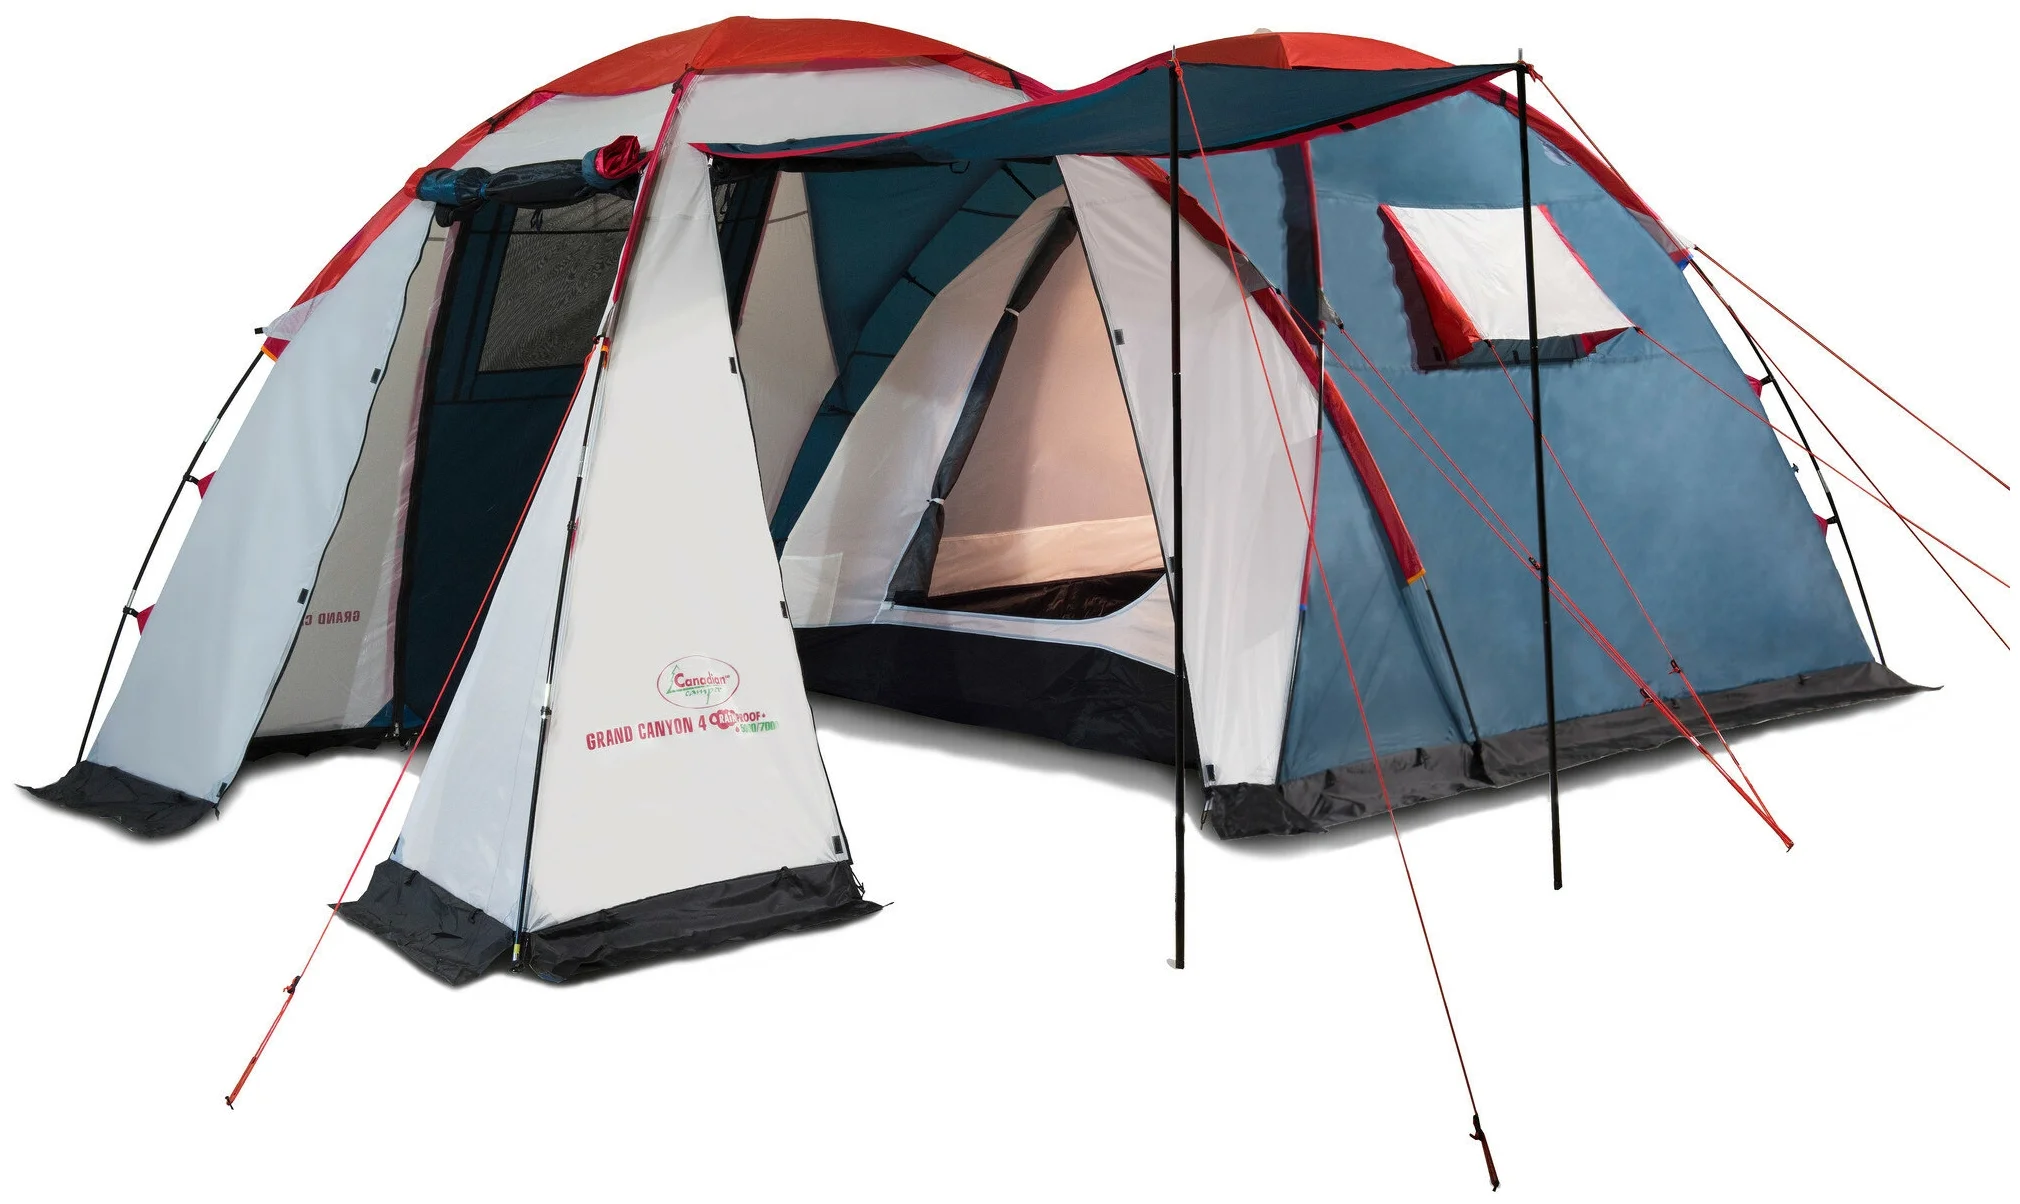 Canadian Camper GRAND CANYON 4 - палатка кемпинговая 4-местная